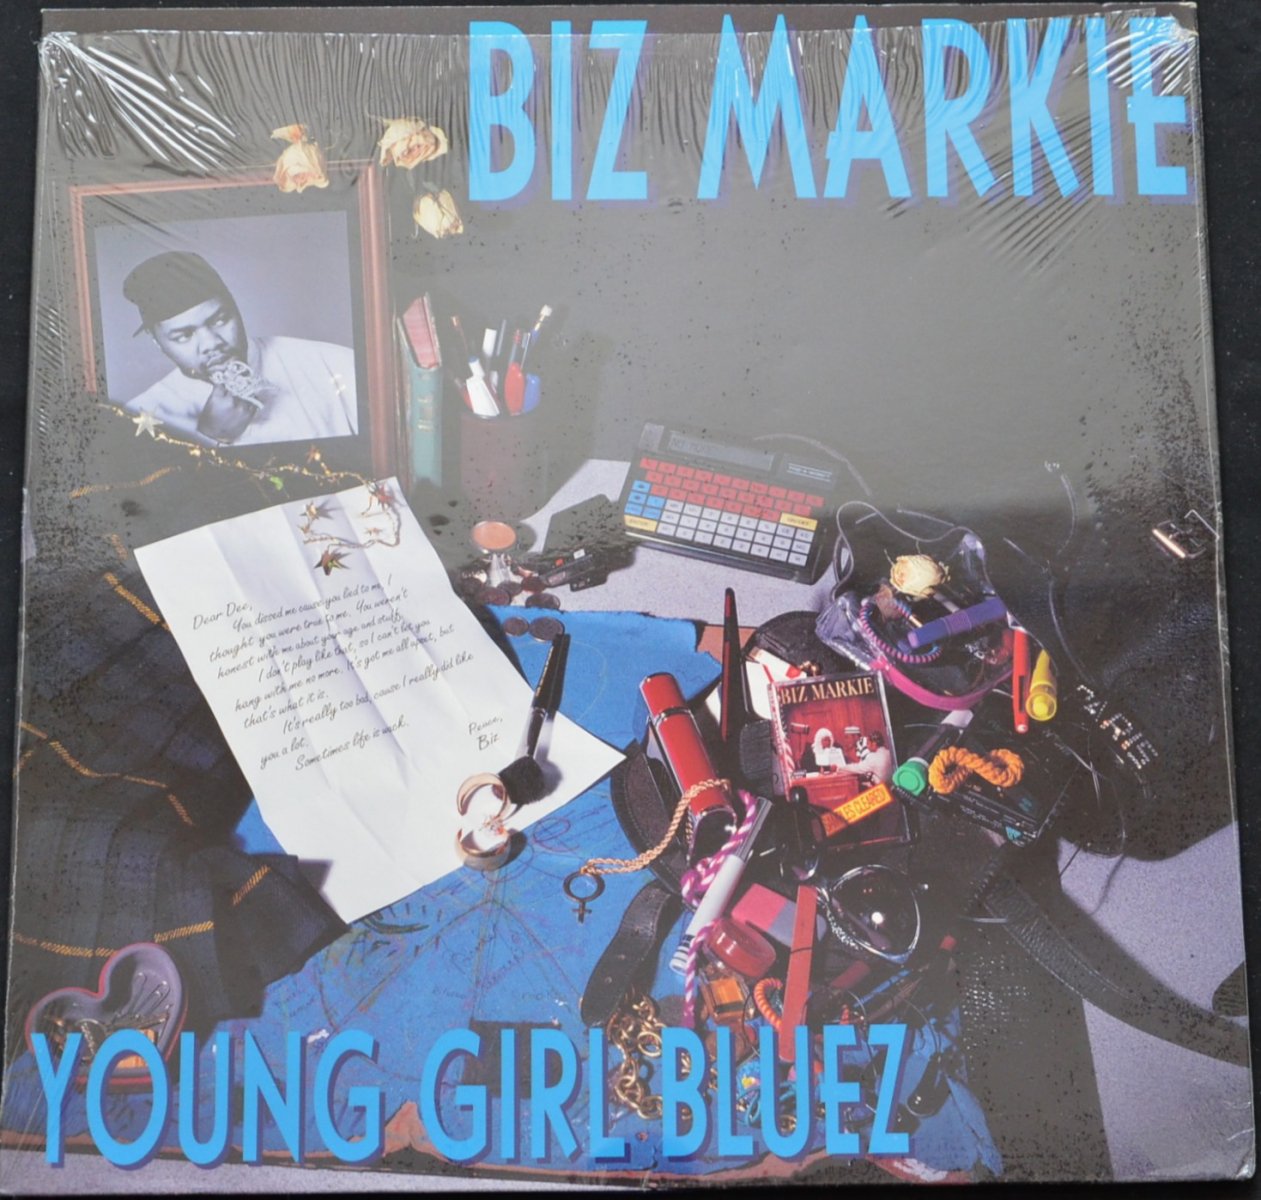 BIZ MARKIE ‎/ YOUNG GIRL BLUEZ (PROD BY SALAAM REMIX) / I'M THE BIZ MARKIE / FAMILY TREE (12